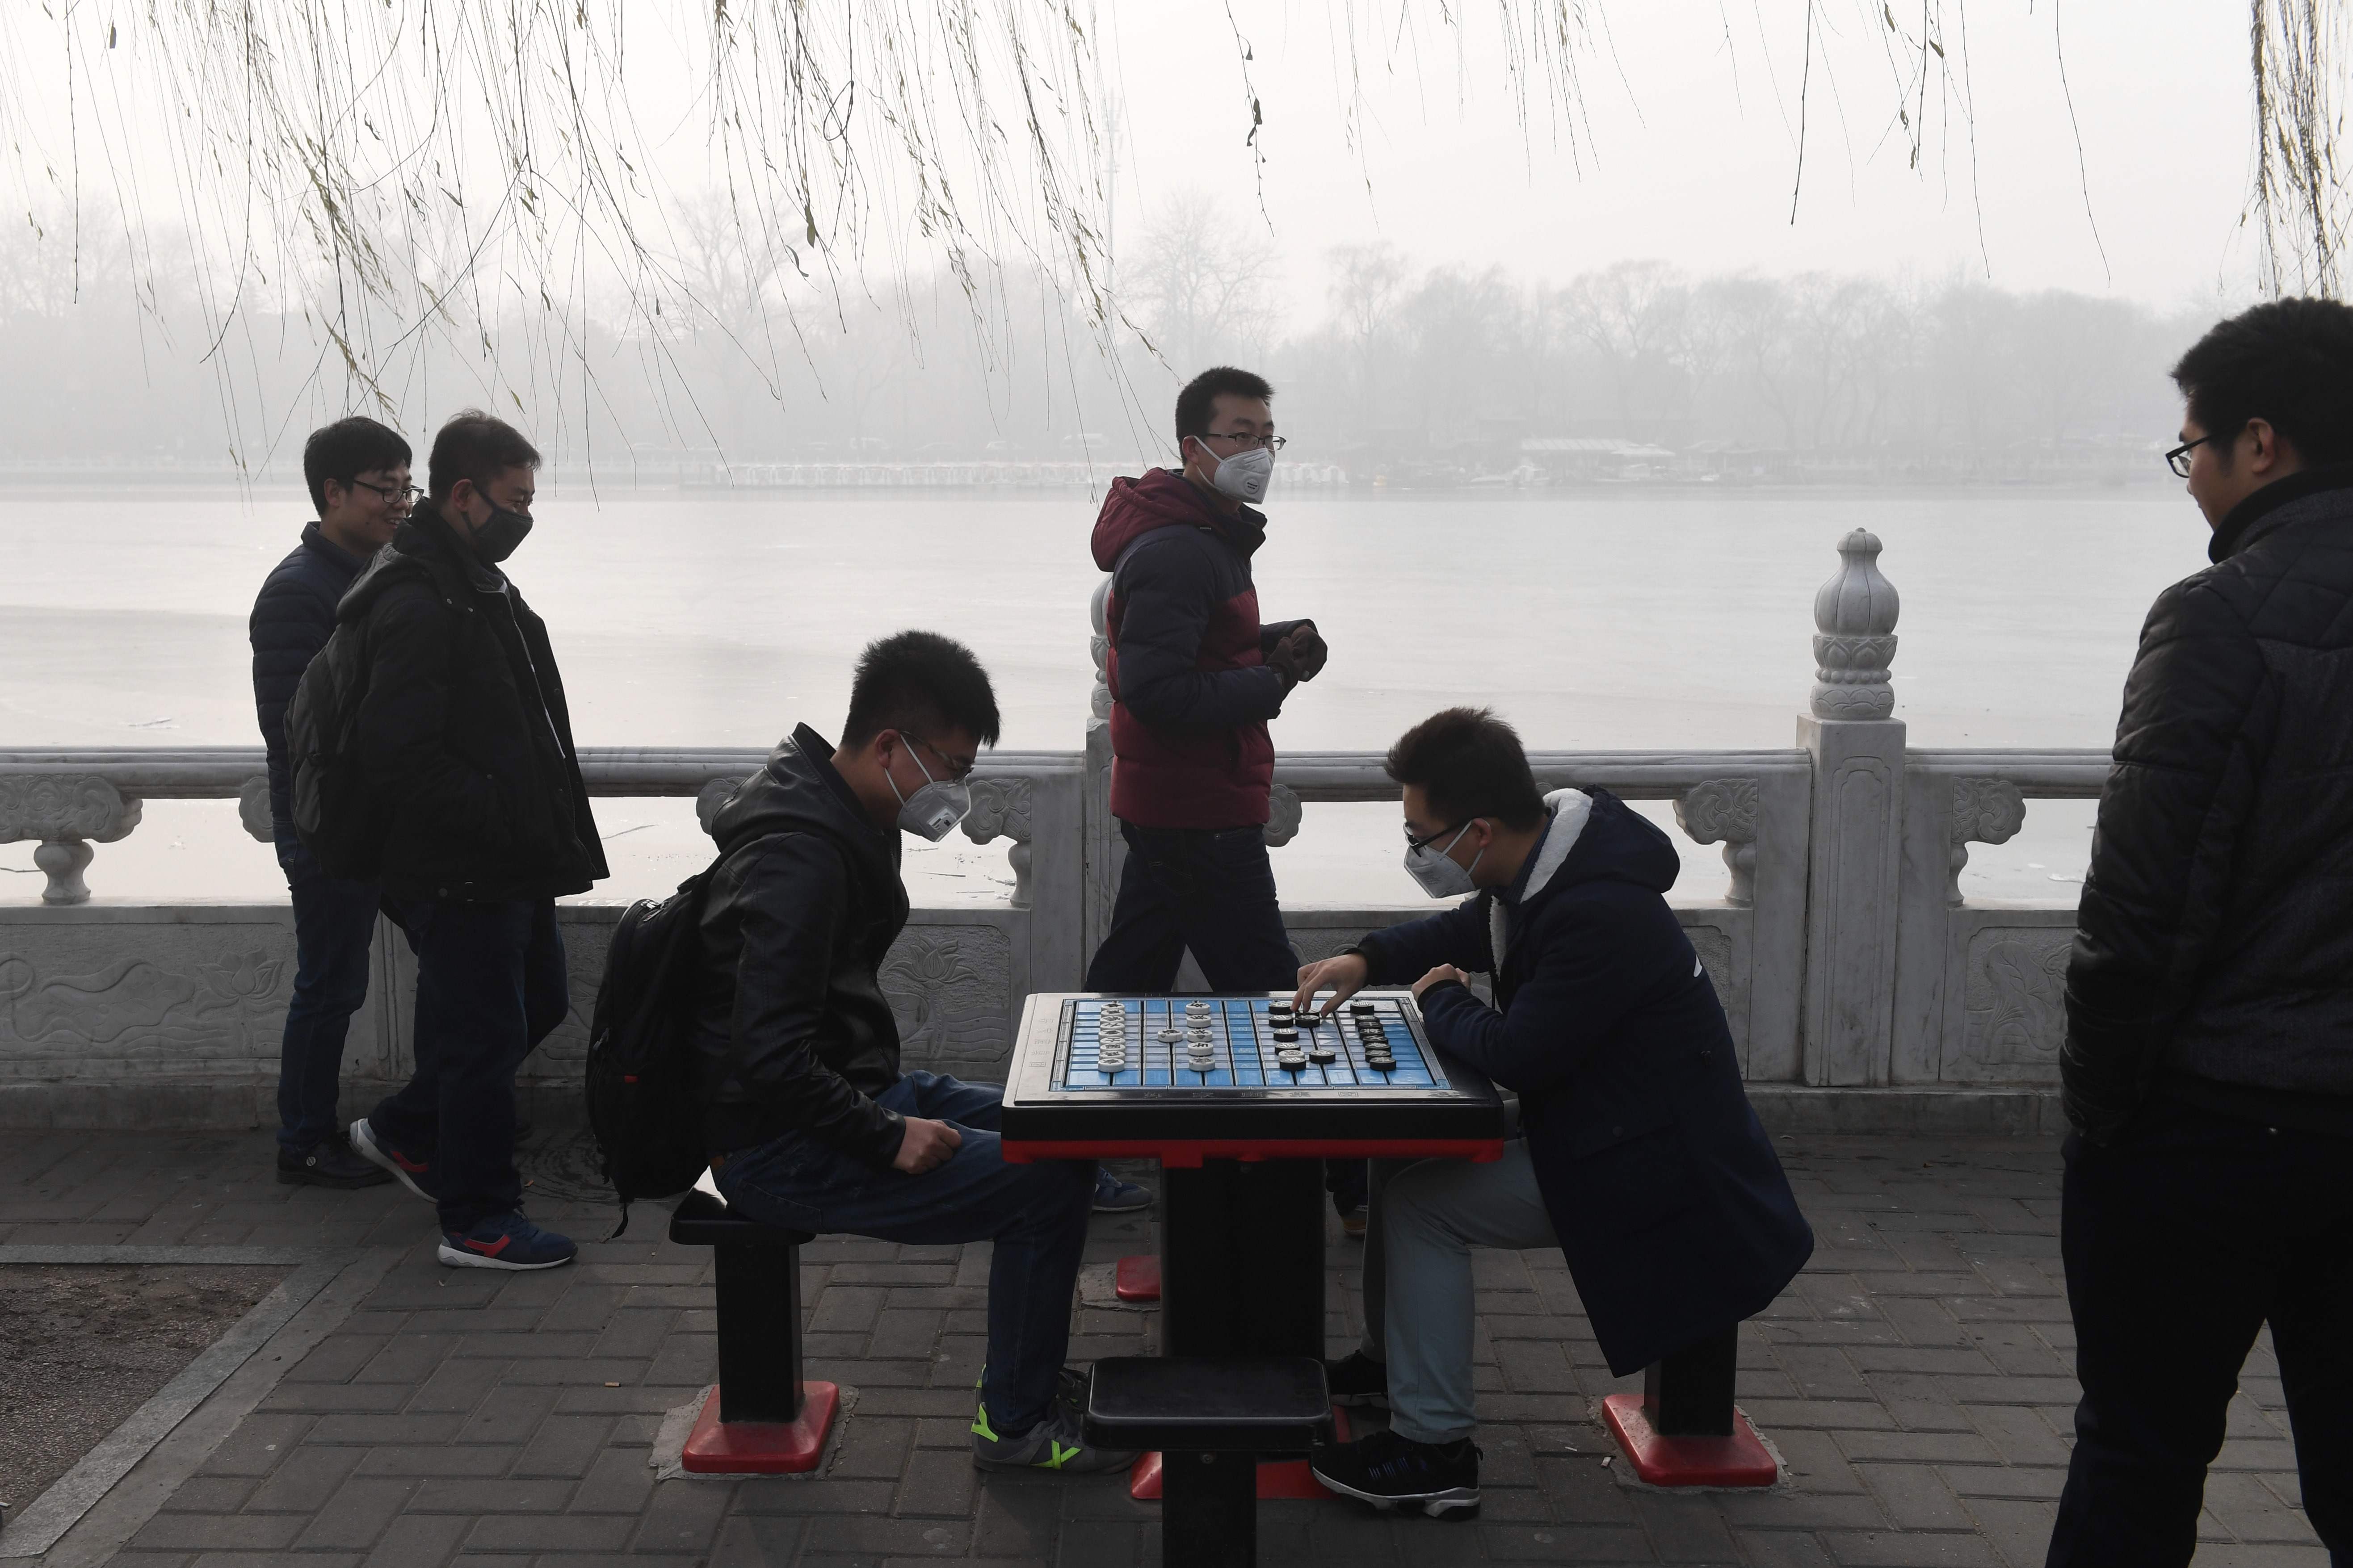 شابان صينيان يلعبان الدومينو فى الشارع رغم الضباب